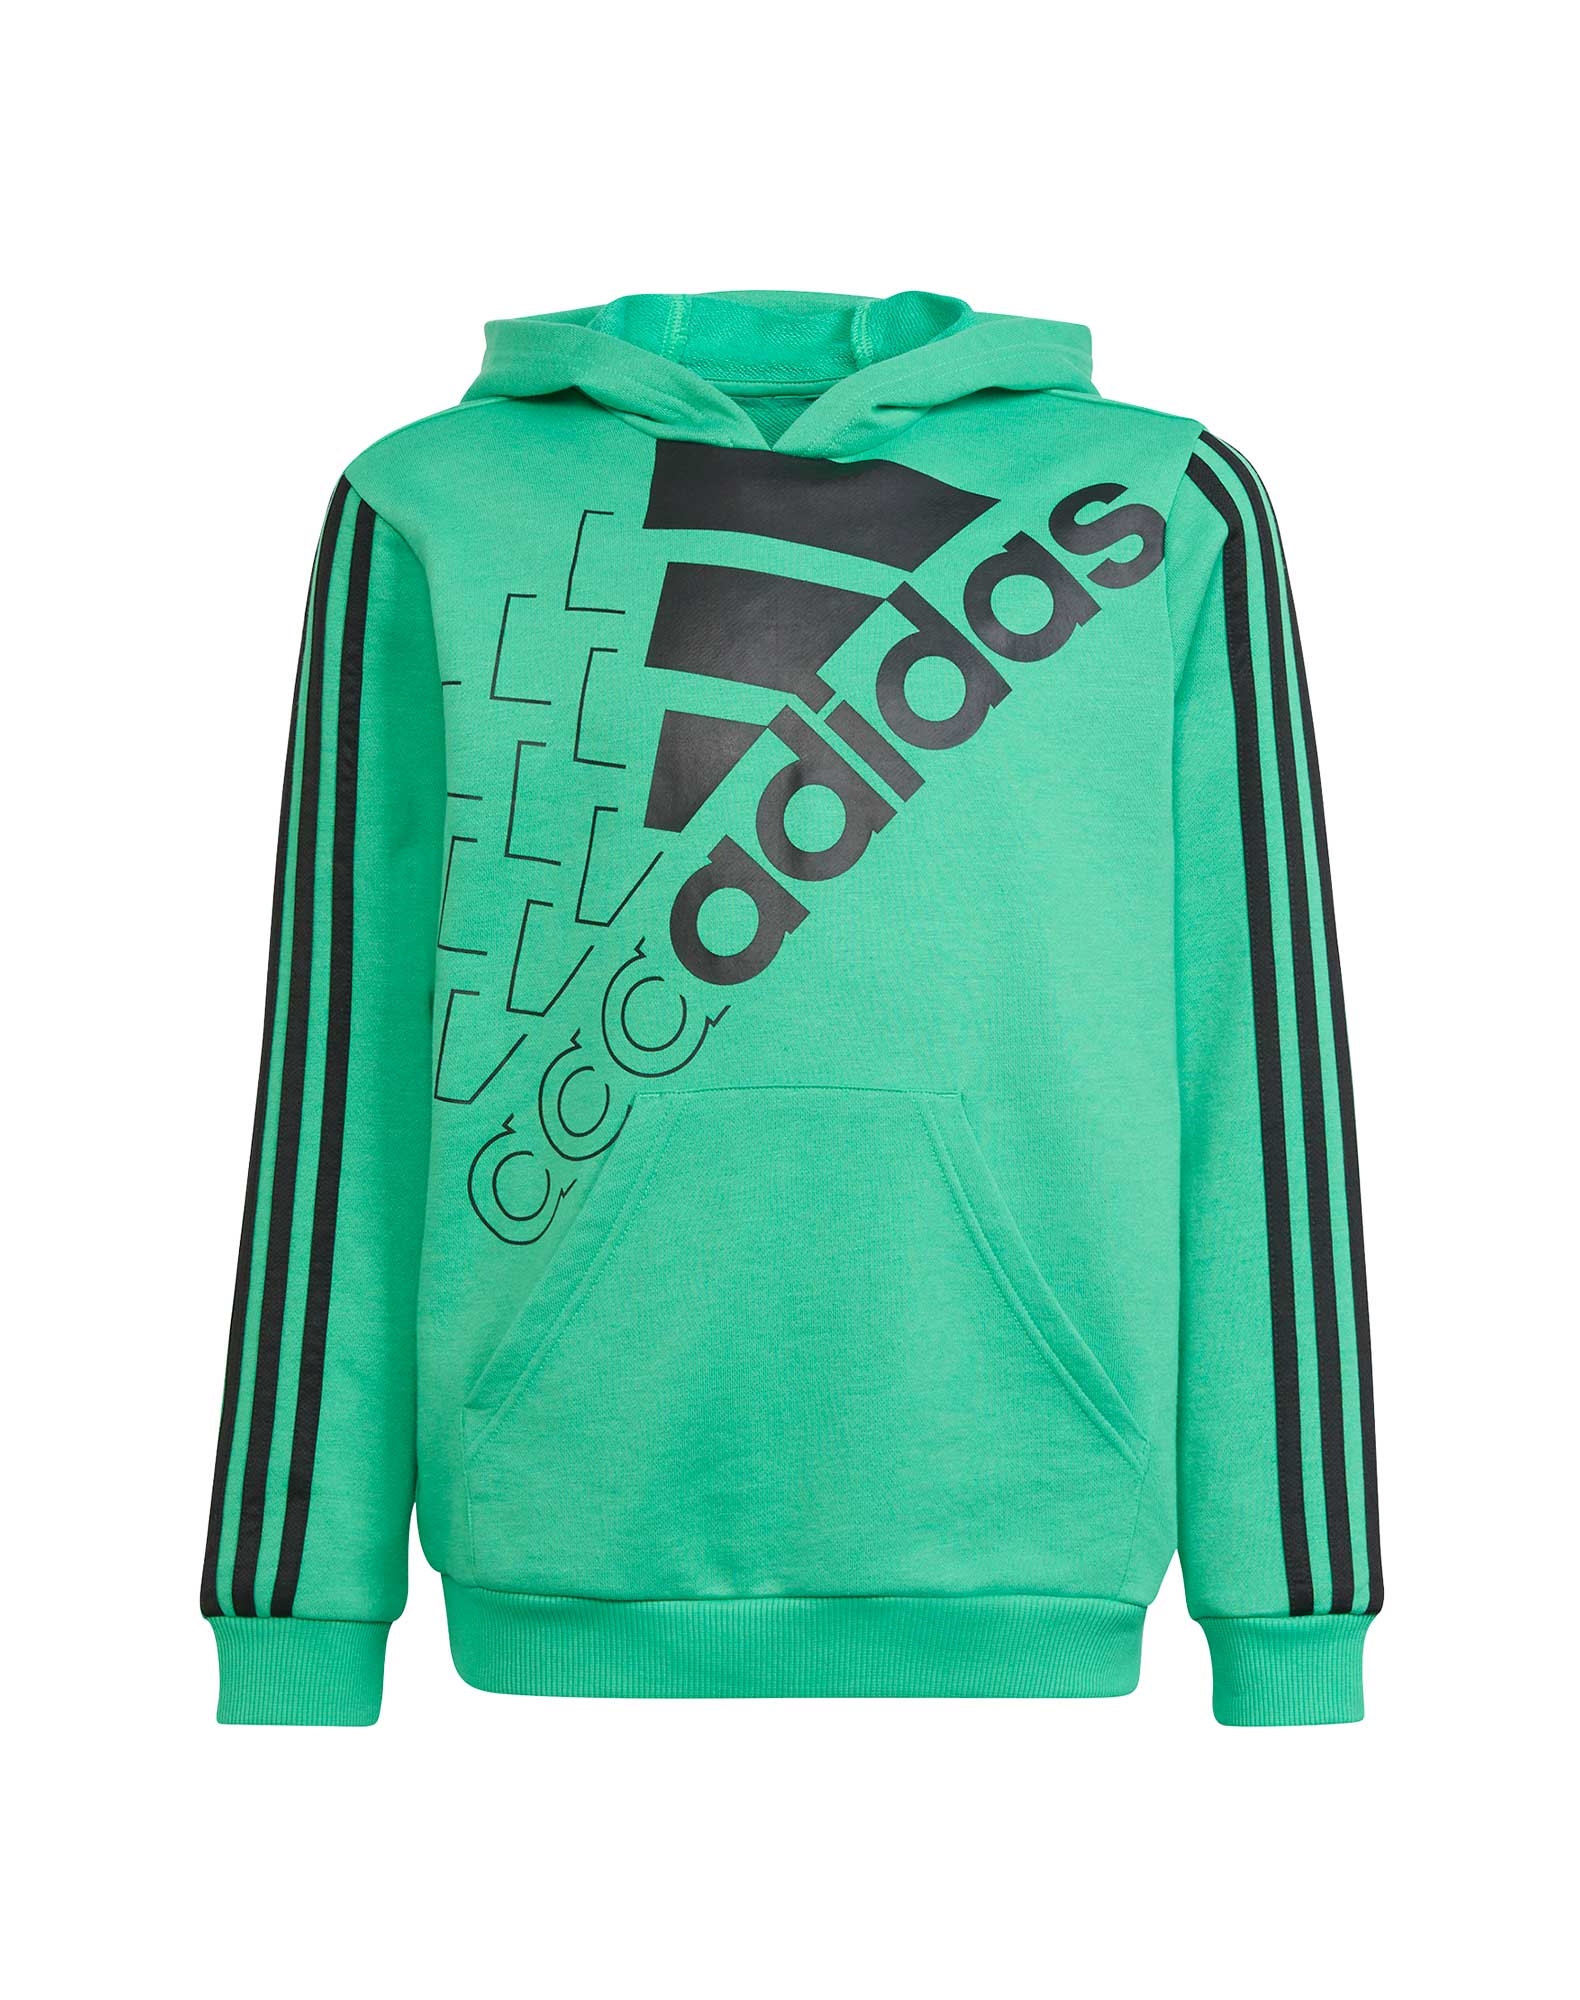 Adidas trøje til børn i grøn